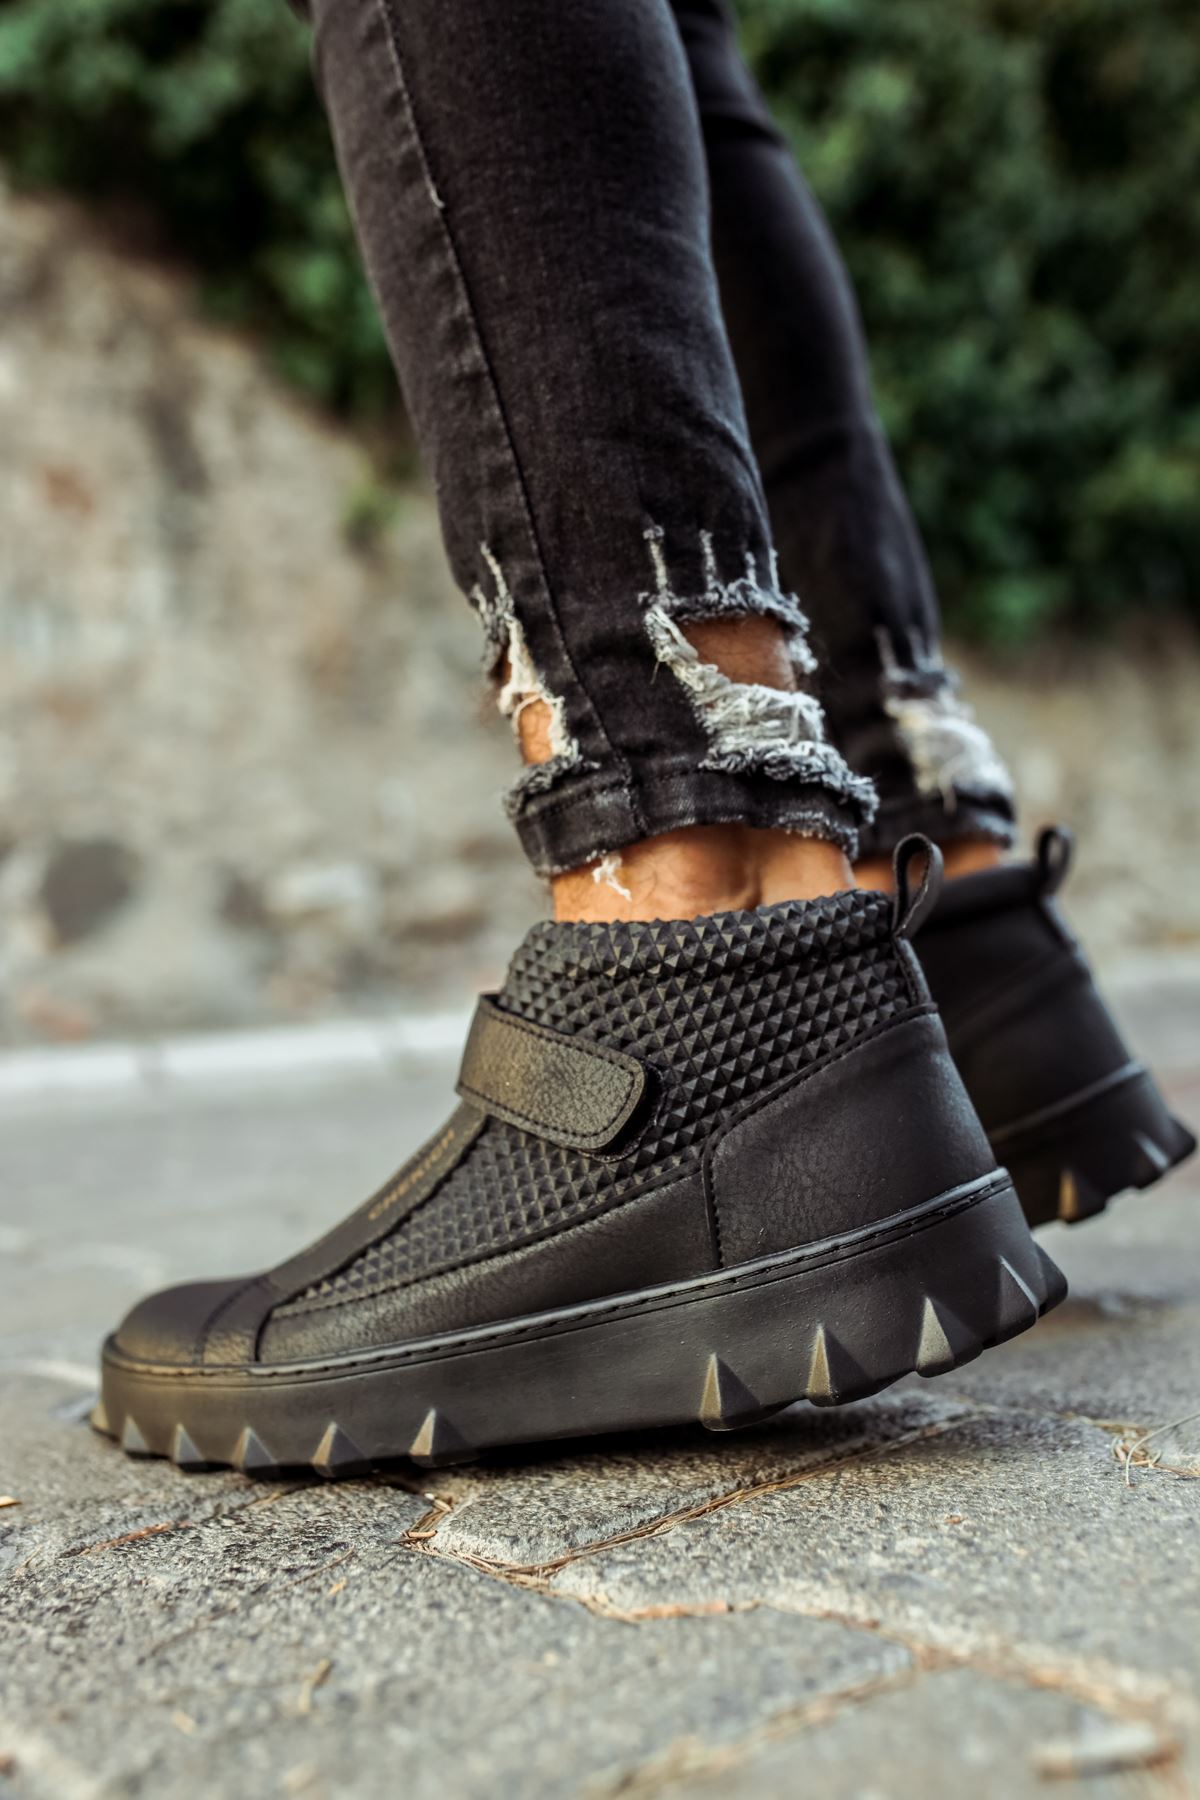 Chekich Boots for Men Black Color Faux Leather Breathable shoe